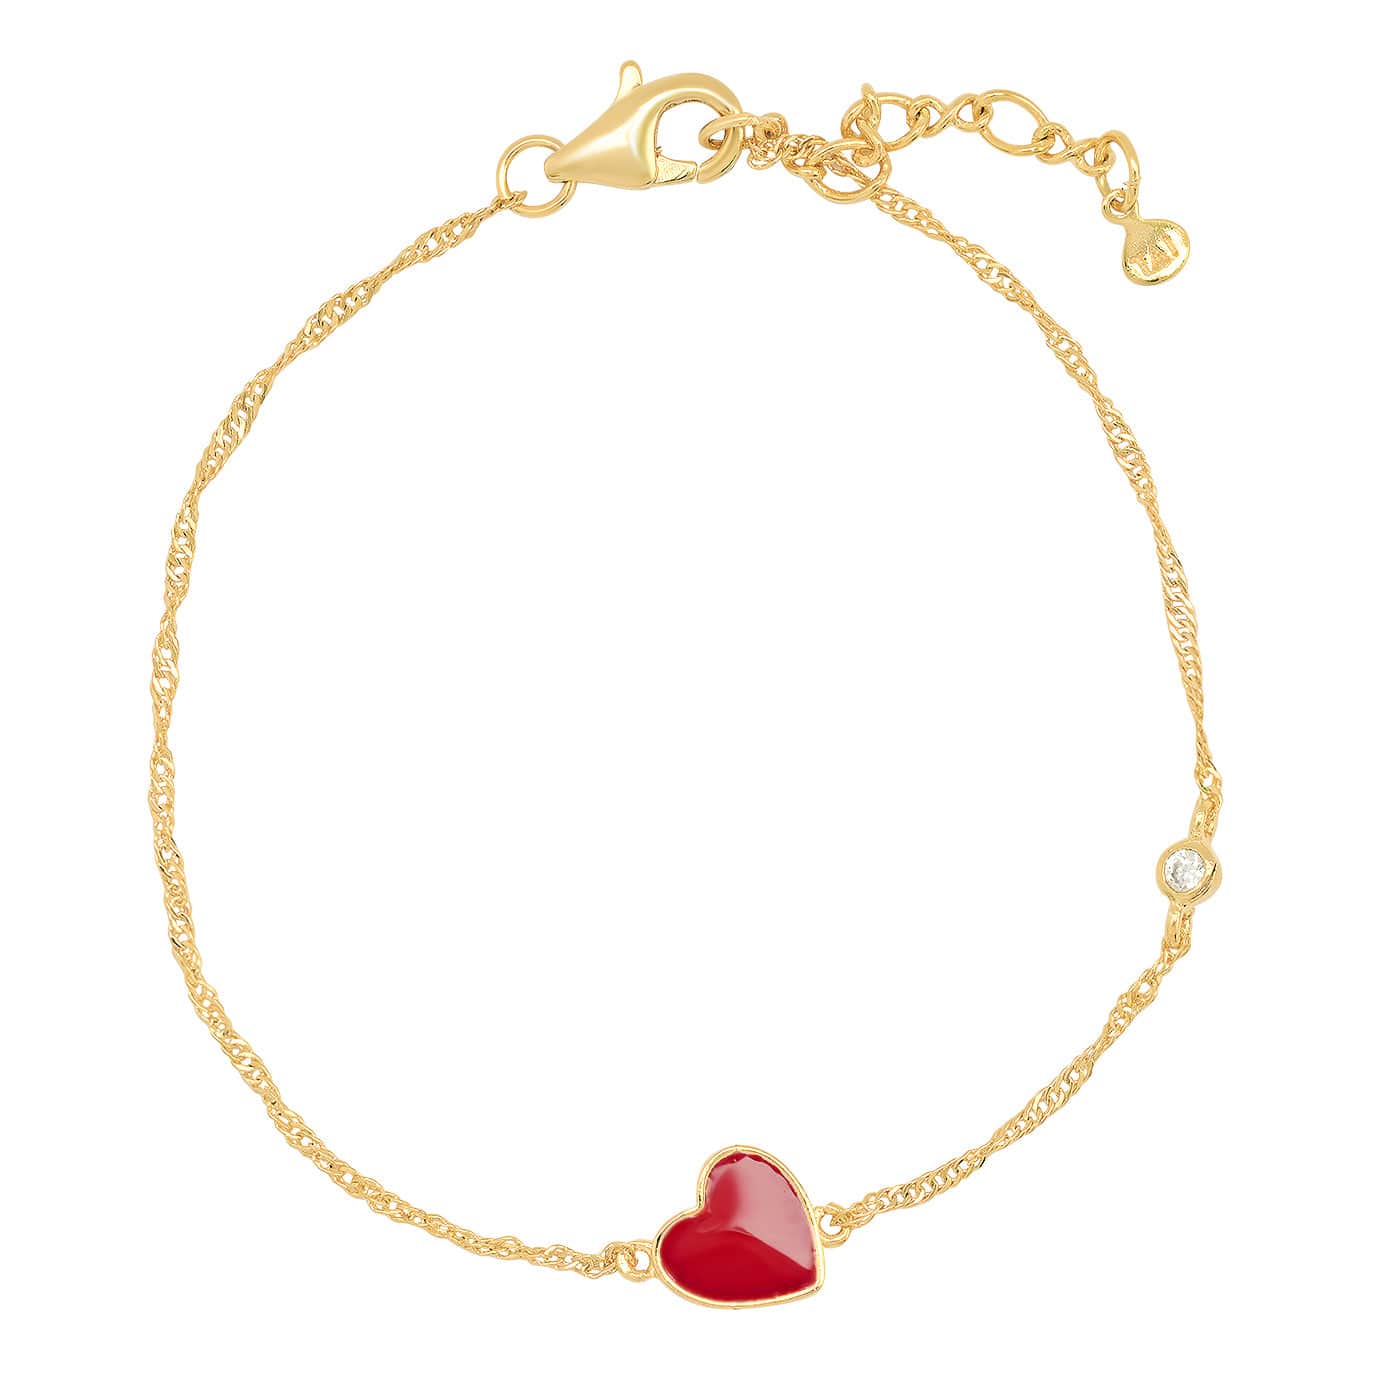 TAI JEWELRY Bracelet Heart Heart Enamel Charm Chain Bracelet